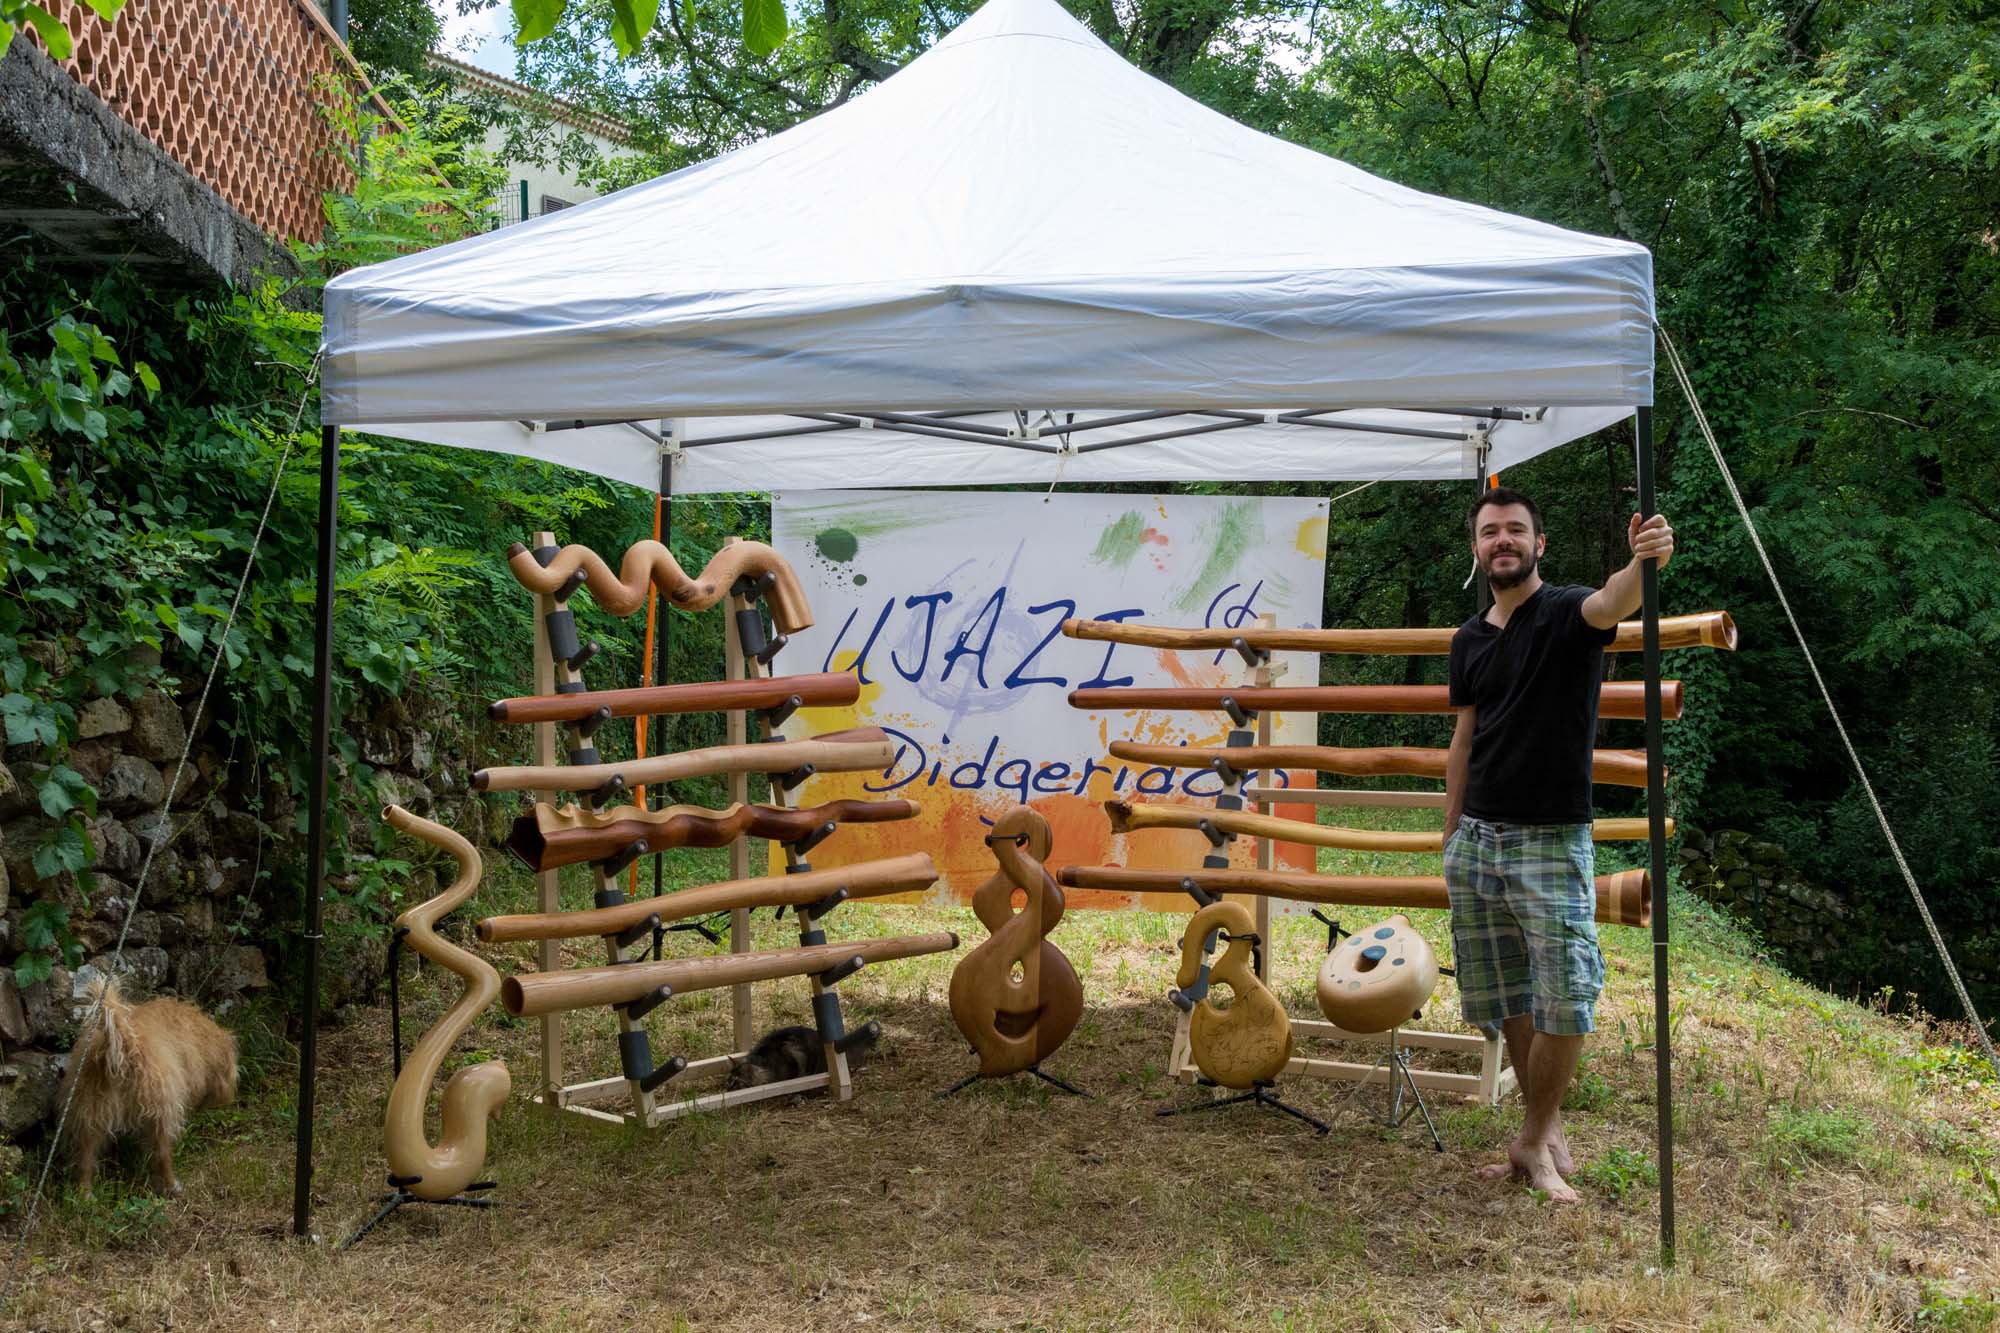 Stand Ujazi et présentoires avec une quinzaine de didgeridoos divers, prêt pour le Rêve de l'Aborigène 2016 